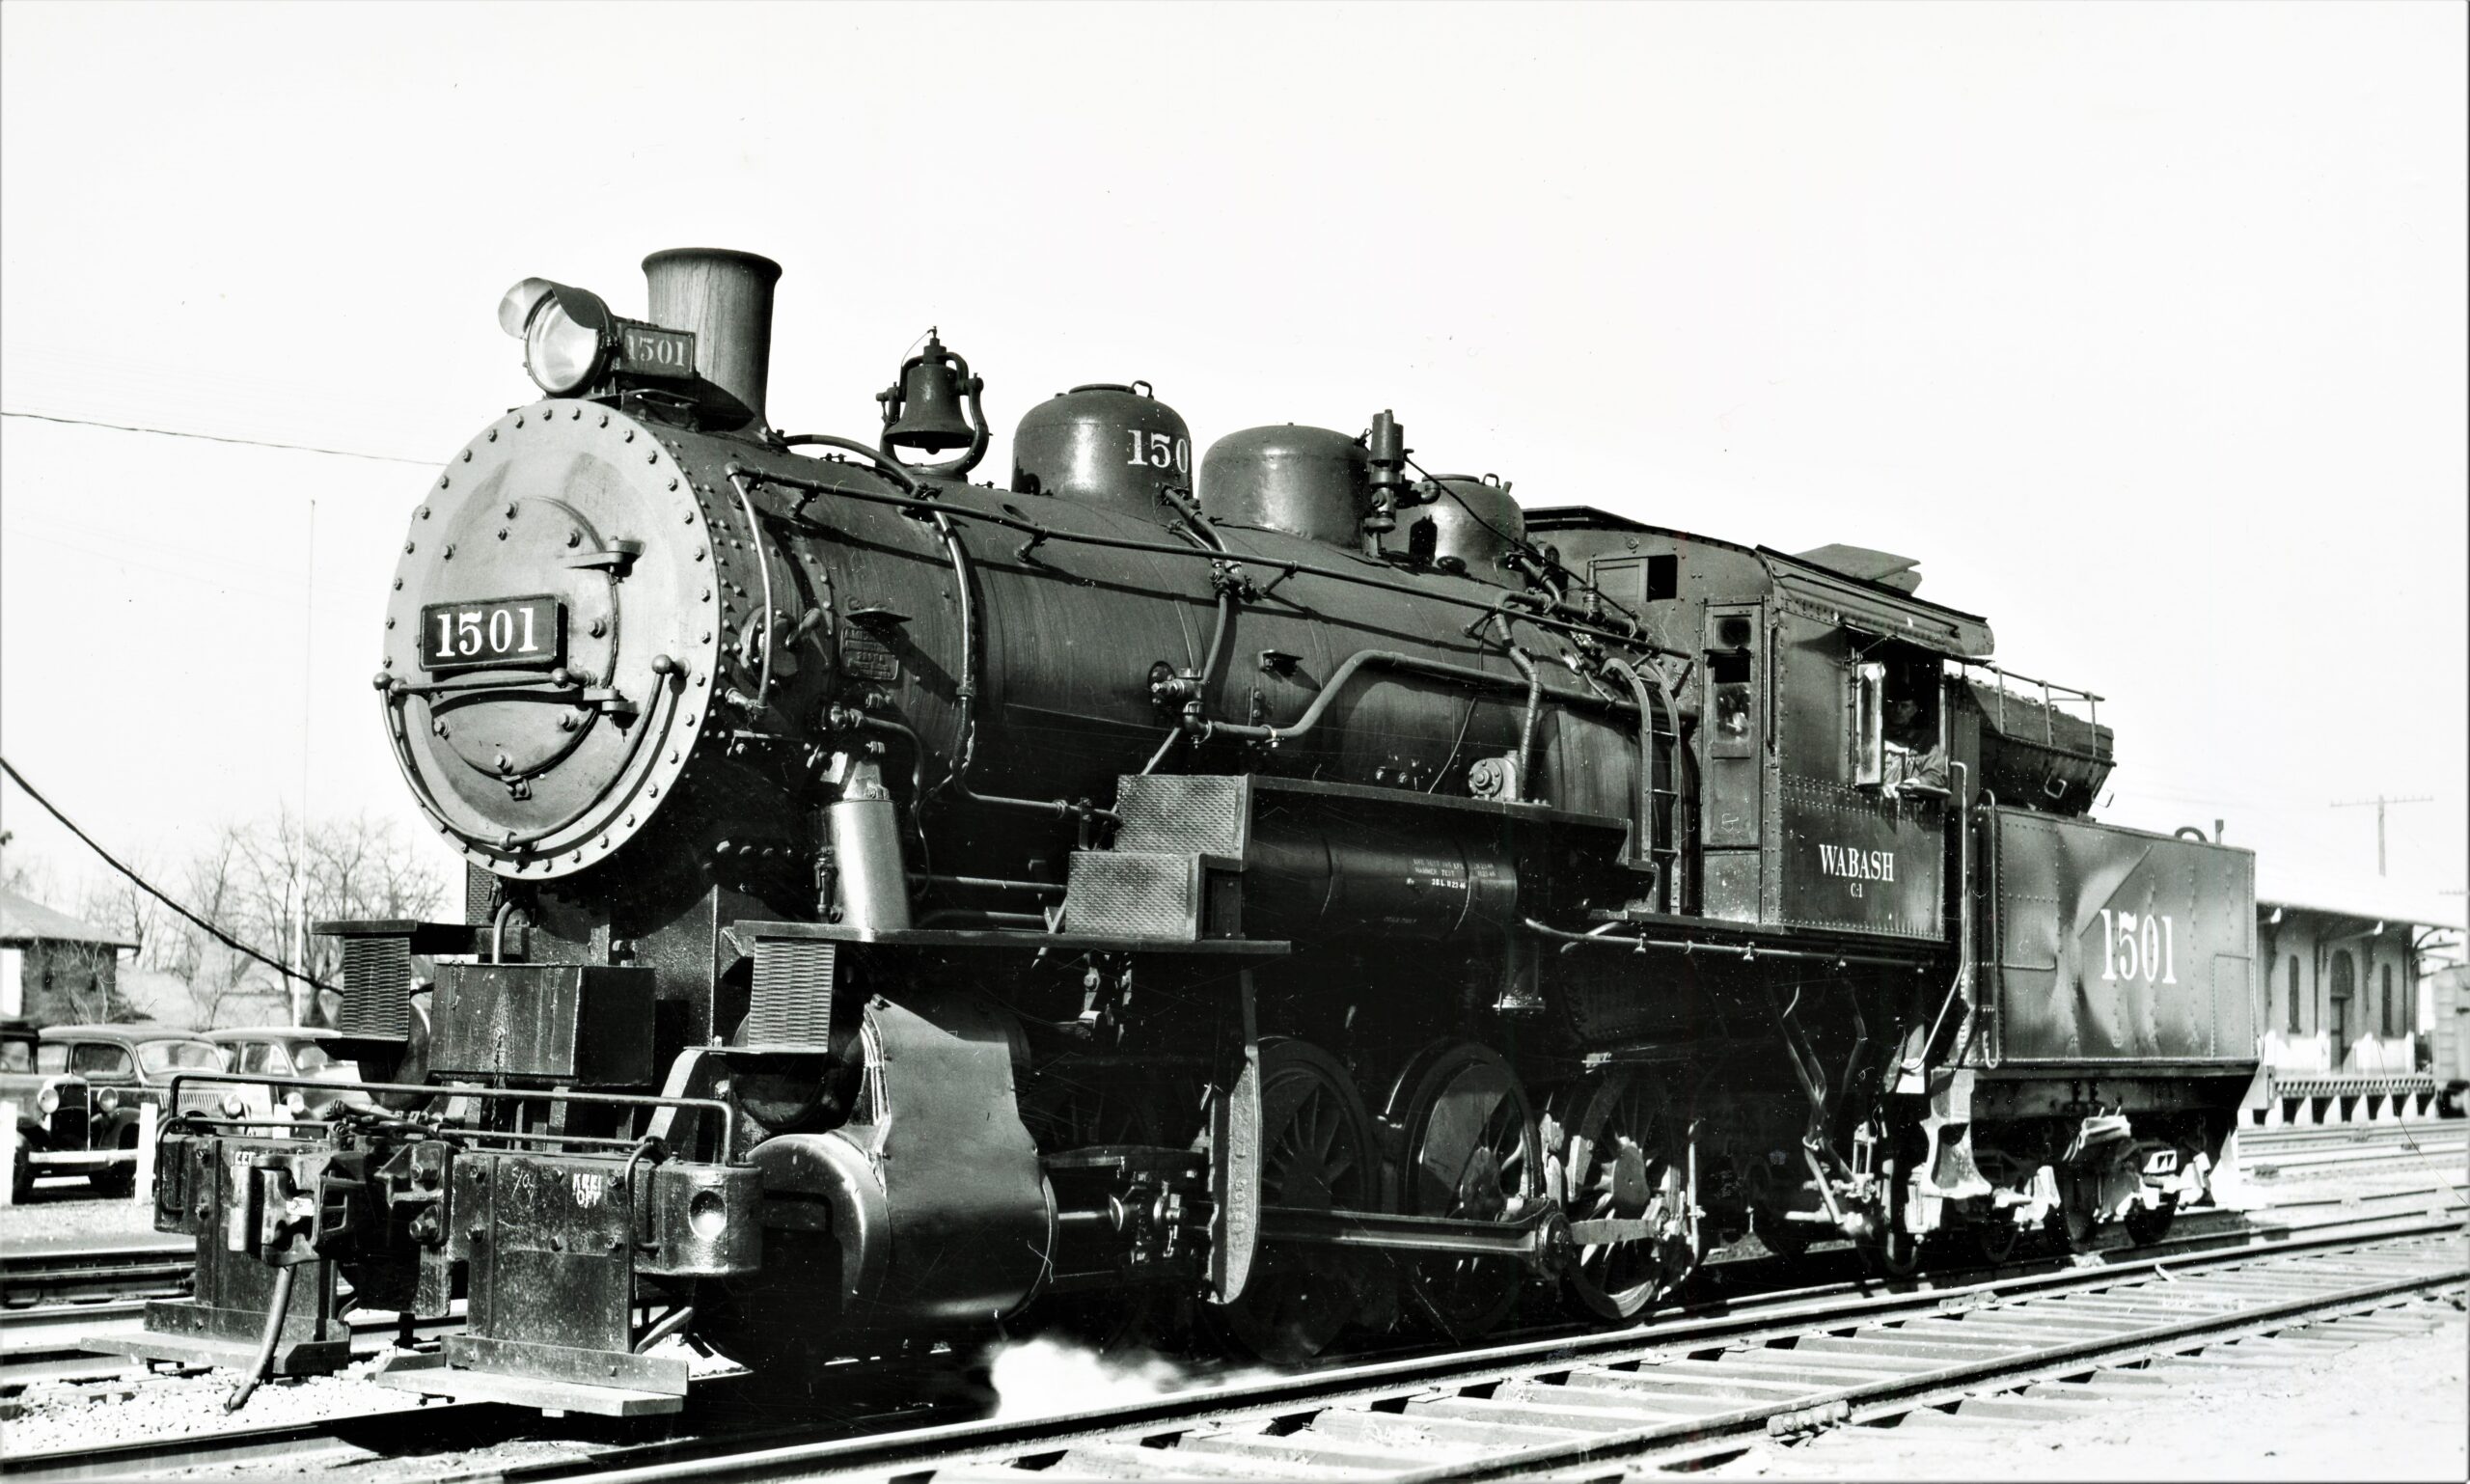 Wabash Railroad | Decatur, Illinois | Class C-1 0-8-0 #1501 steam locomotive | April 6, 1948 | R. J. Foster photograph | Elmer Kremkow Collection